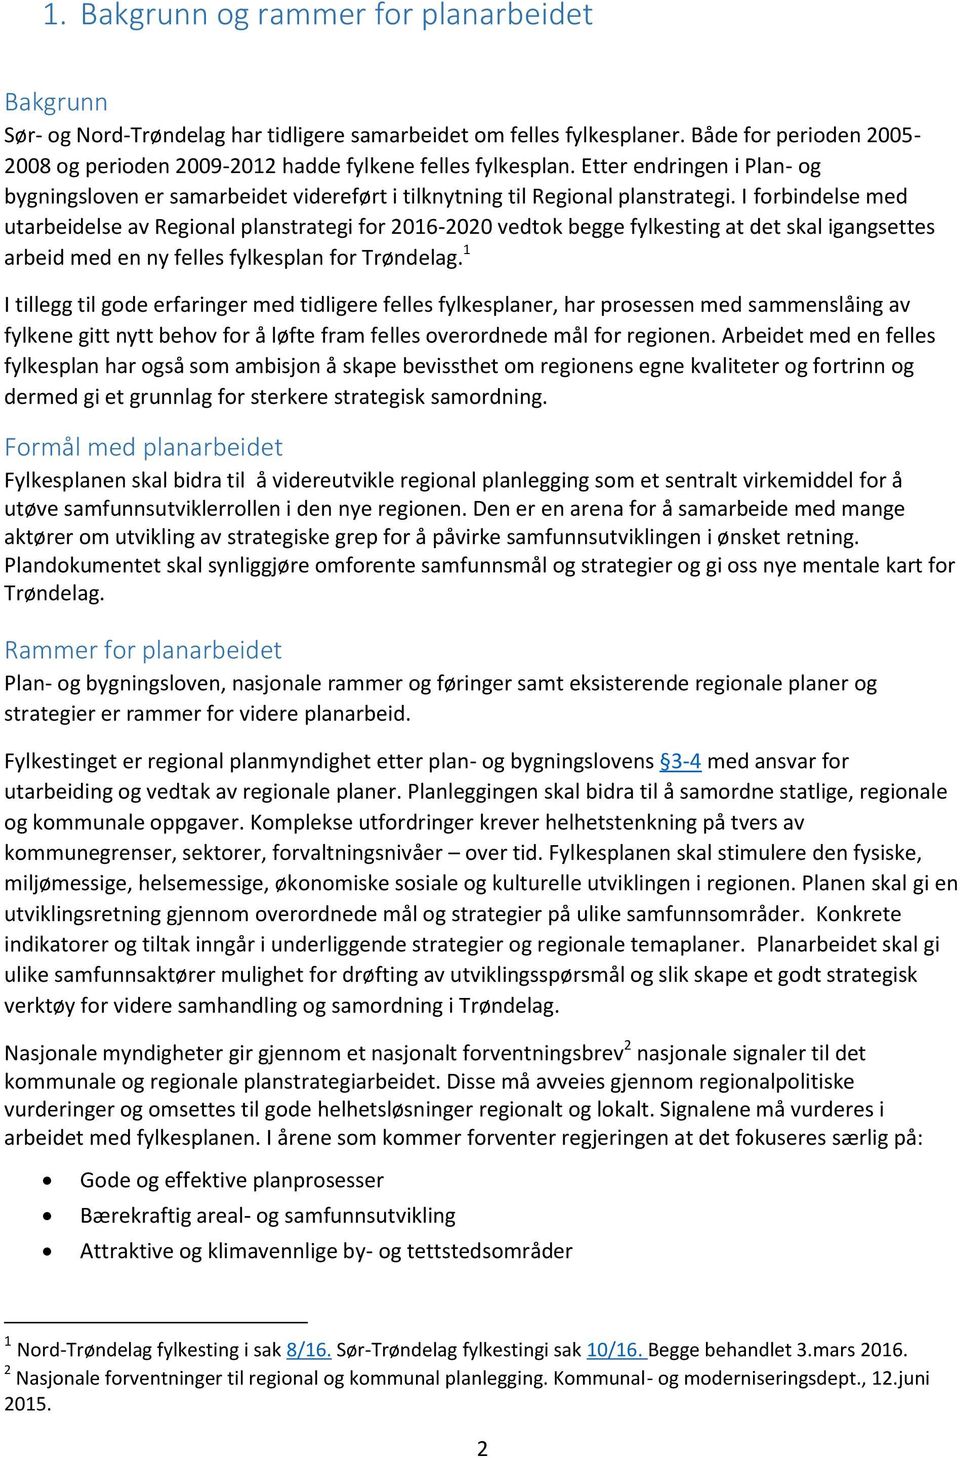 I forbindelse med utarbeidelse av Regional planstrategi for 2016-2020 vedtok begge fylkesting at det skal igangsettes arbeid med en ny felles fylkesplan for Trøndelag.